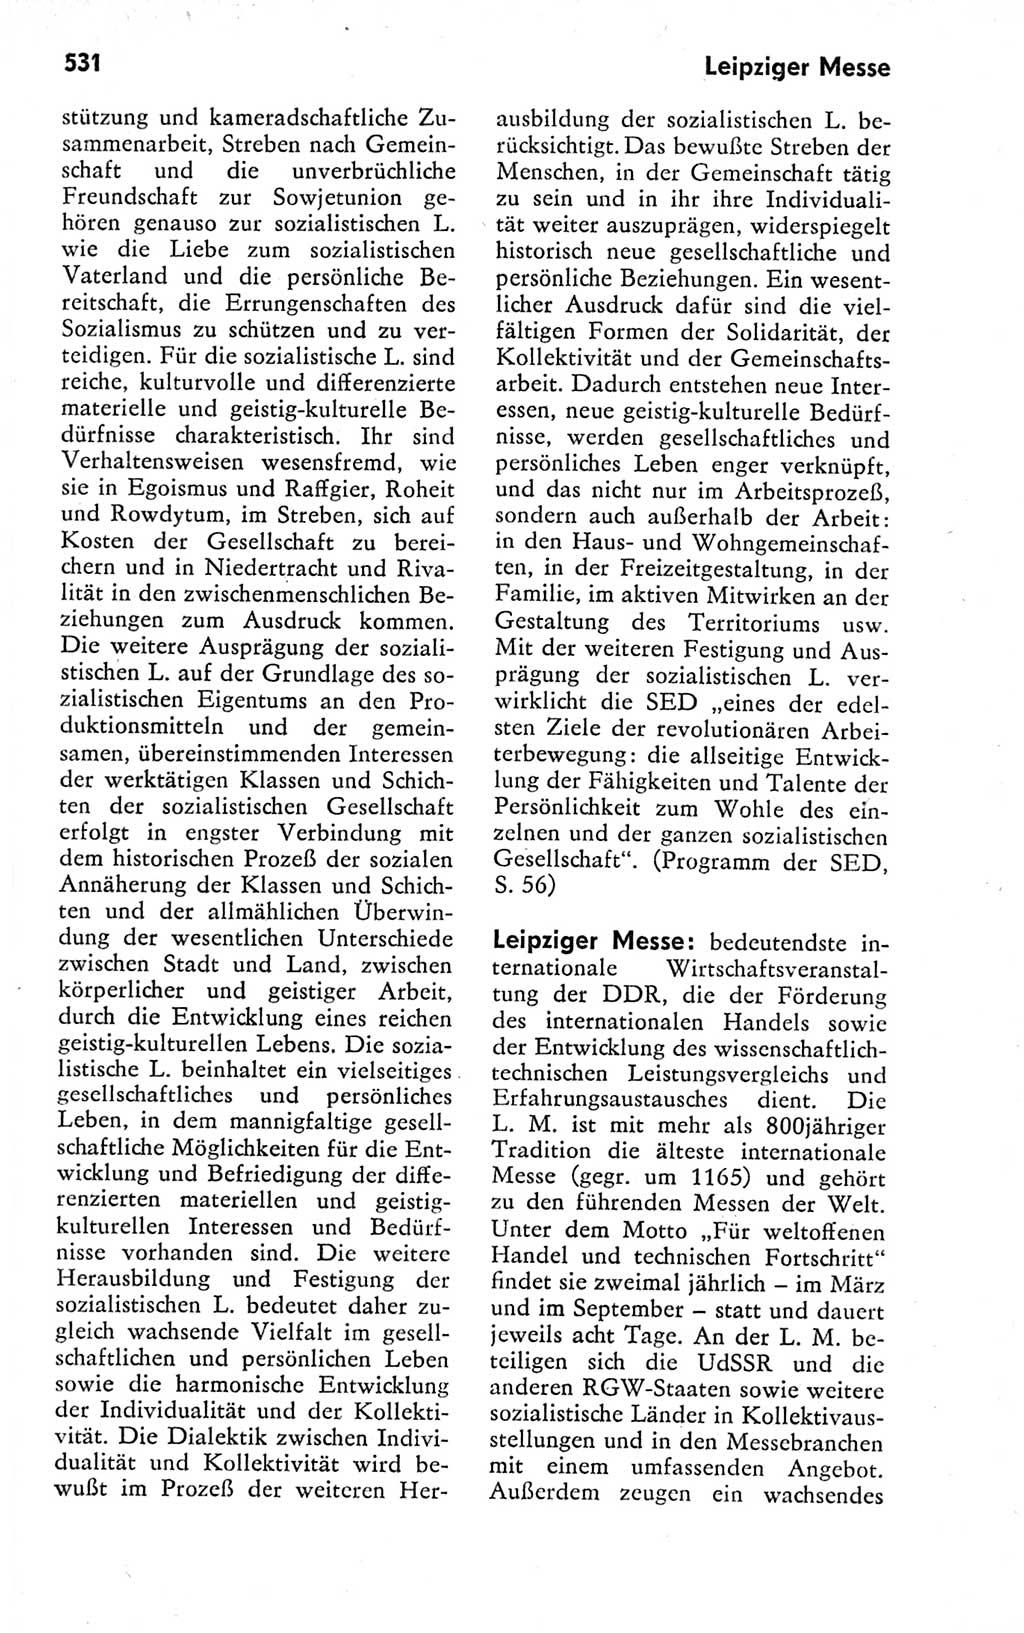 Kleines politisches Wörterbuch [Deutsche Demokratische Republik (DDR)] 1978, Seite 531 (Kl. pol. Wb. DDR 1978, S. 531)